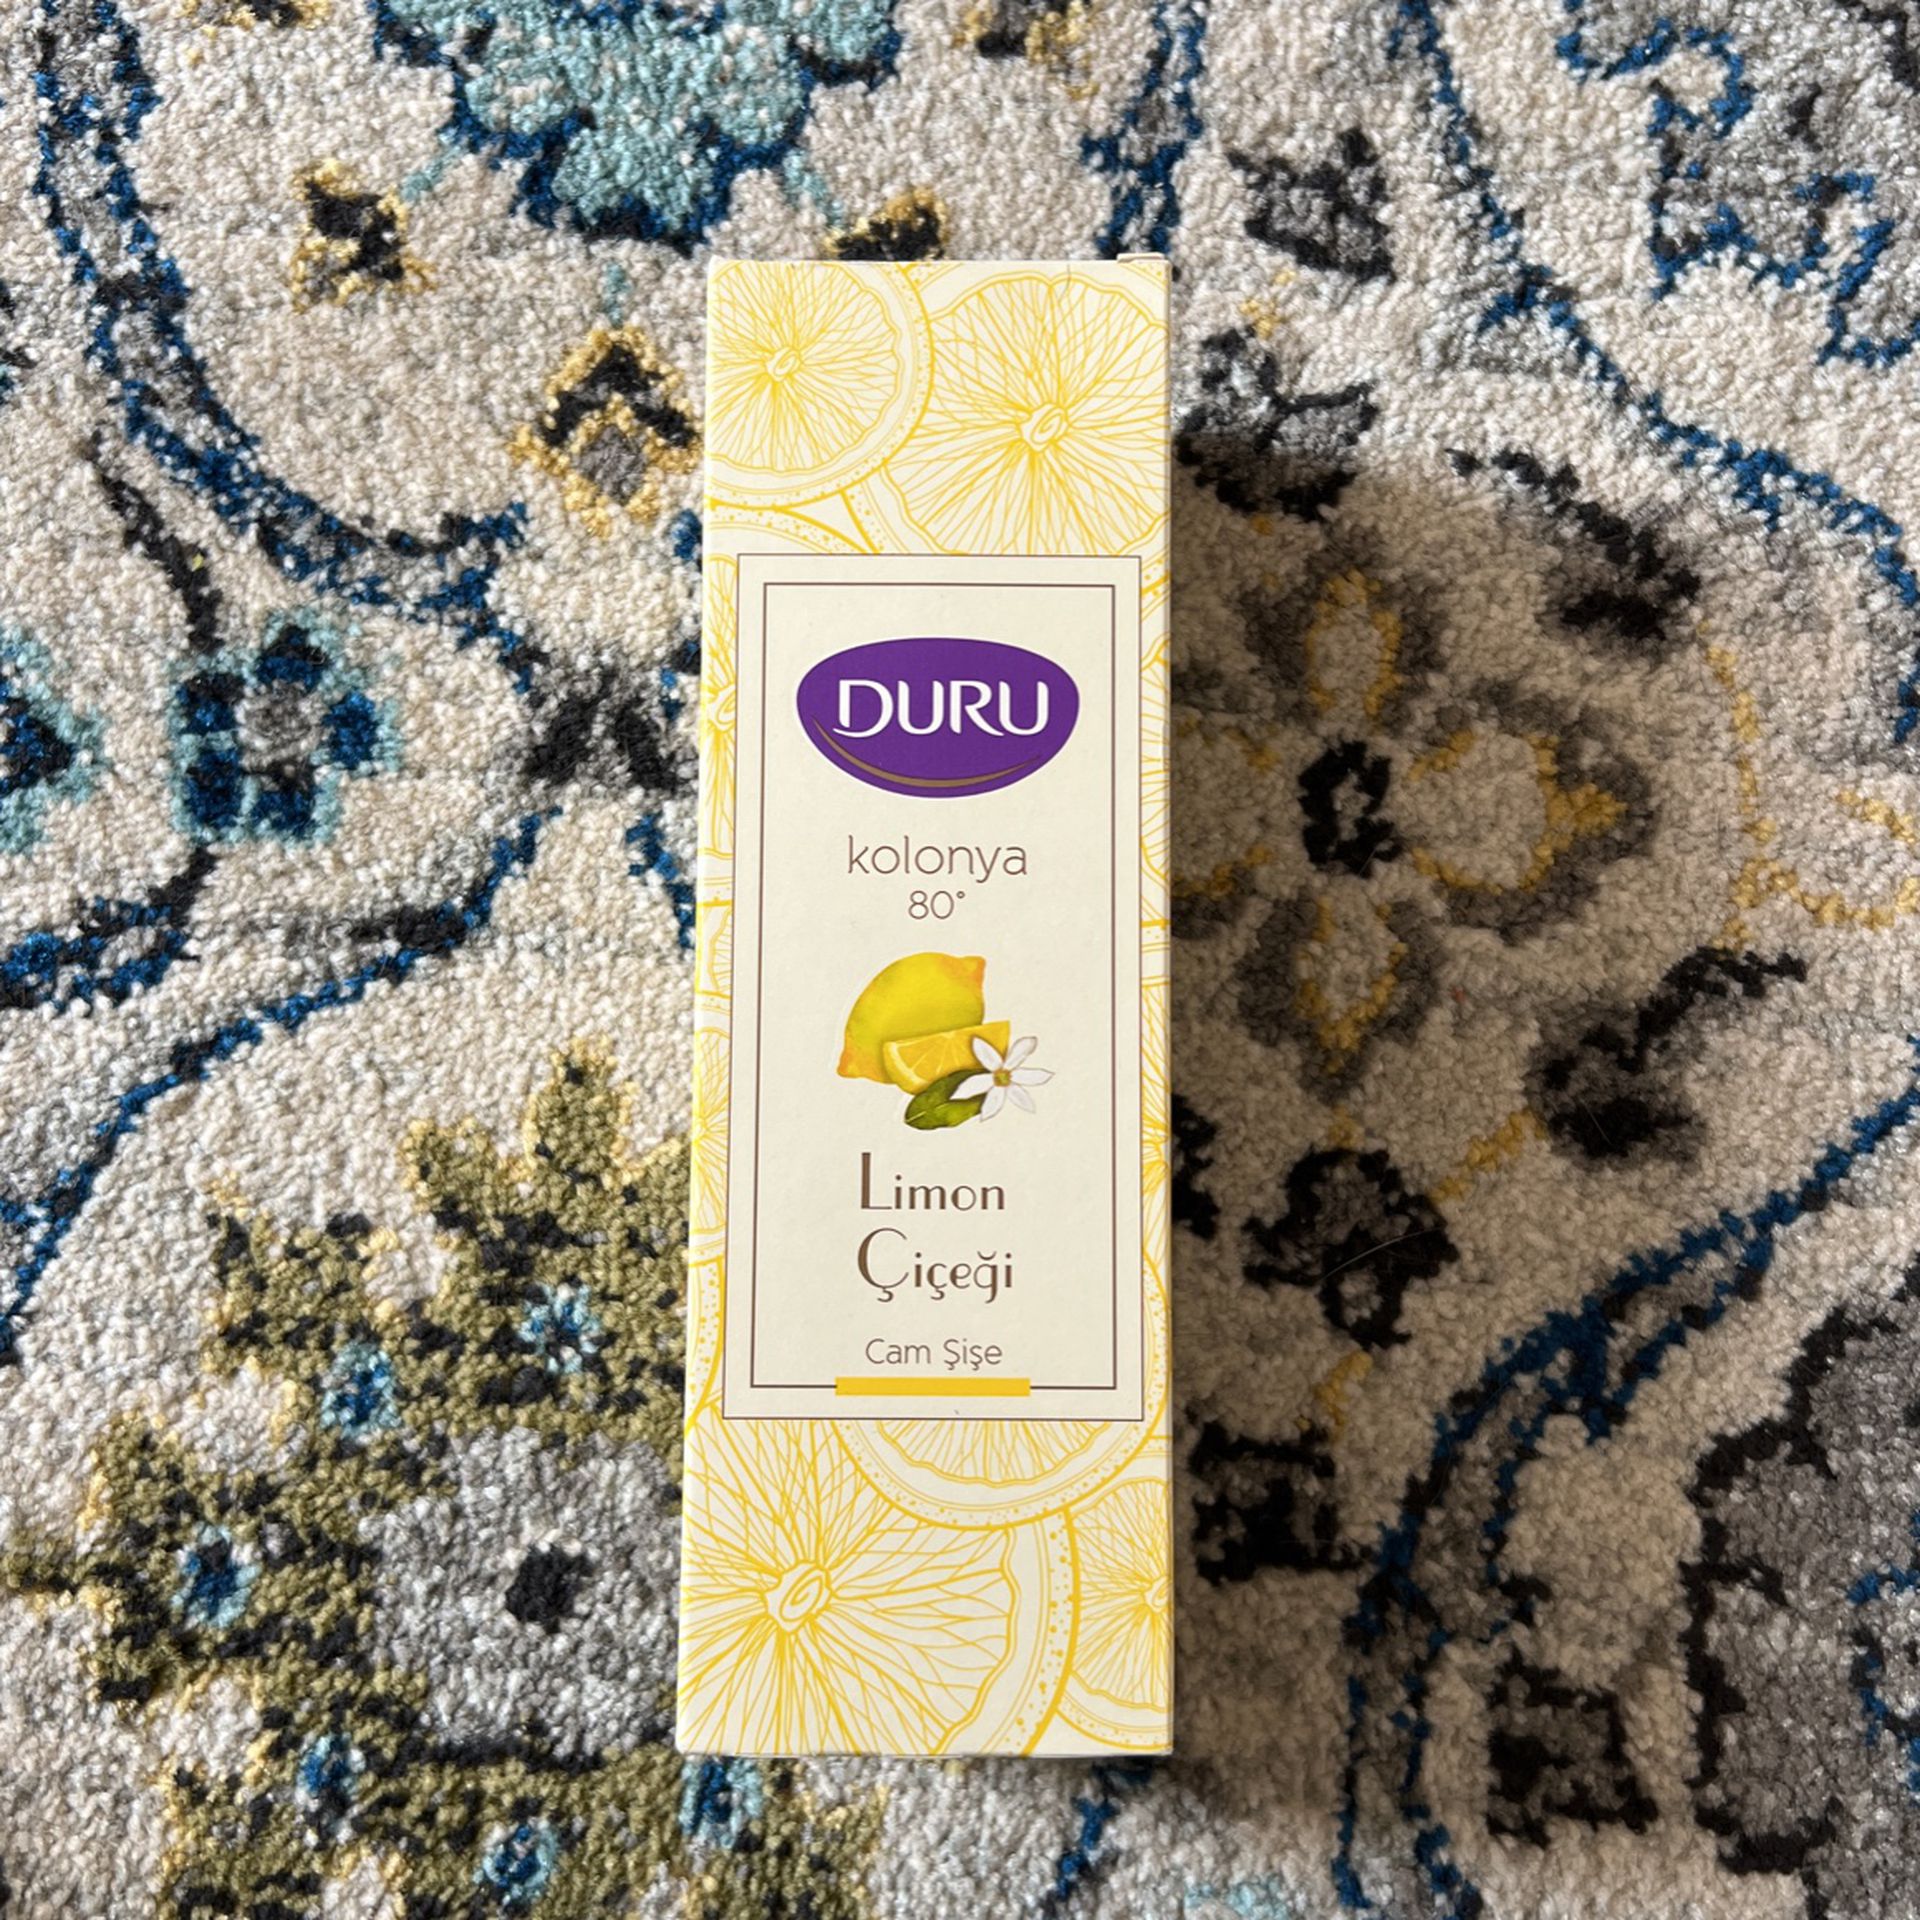 Duru Lemon Cologne From Turkey 